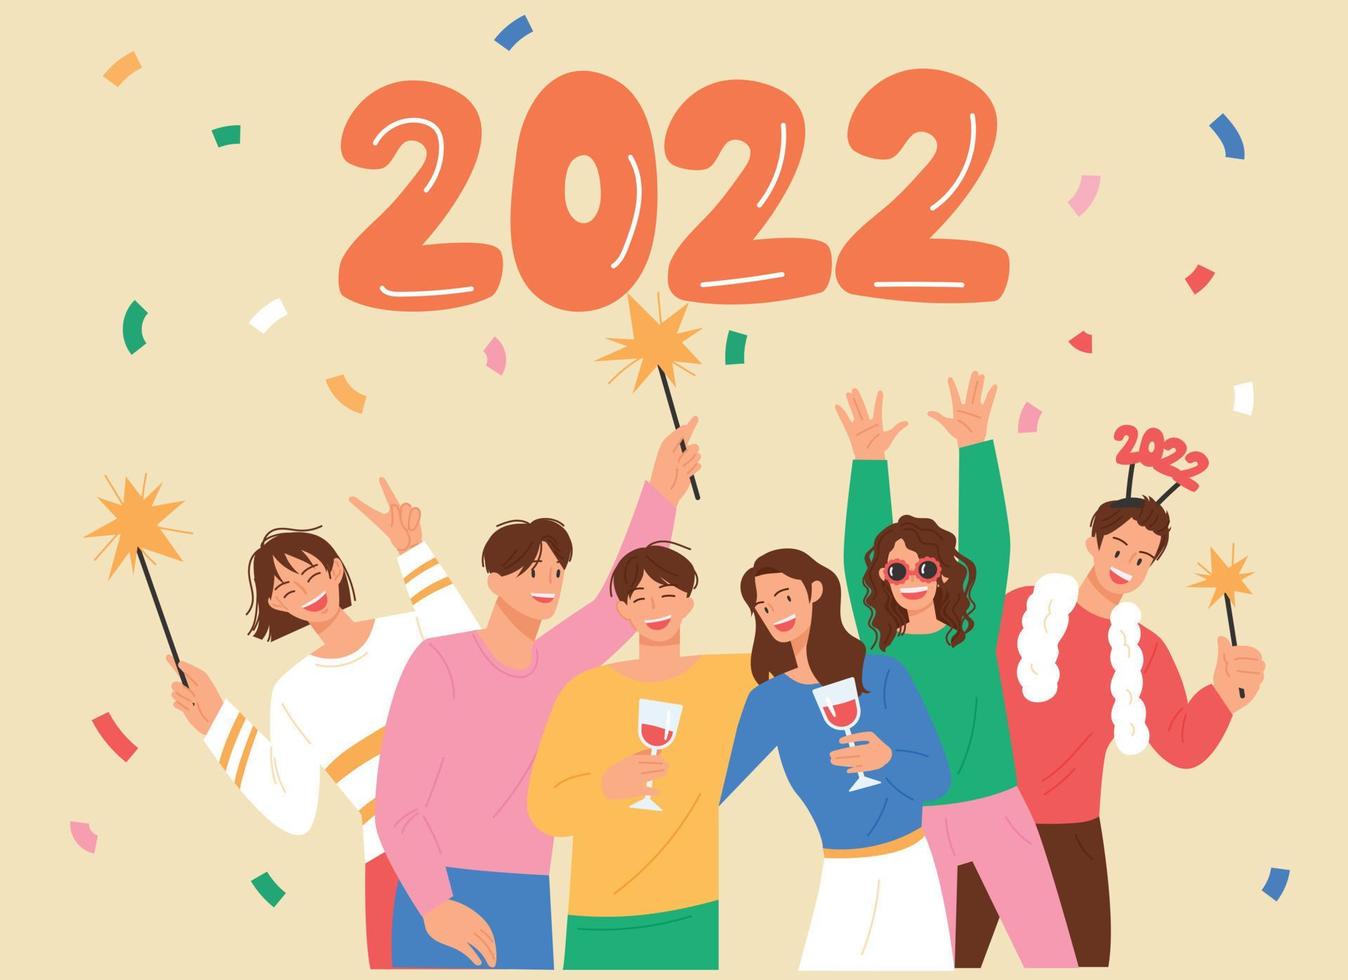 tarjeta de año nuevo. mucha gente está celebrando el año 2022. vector